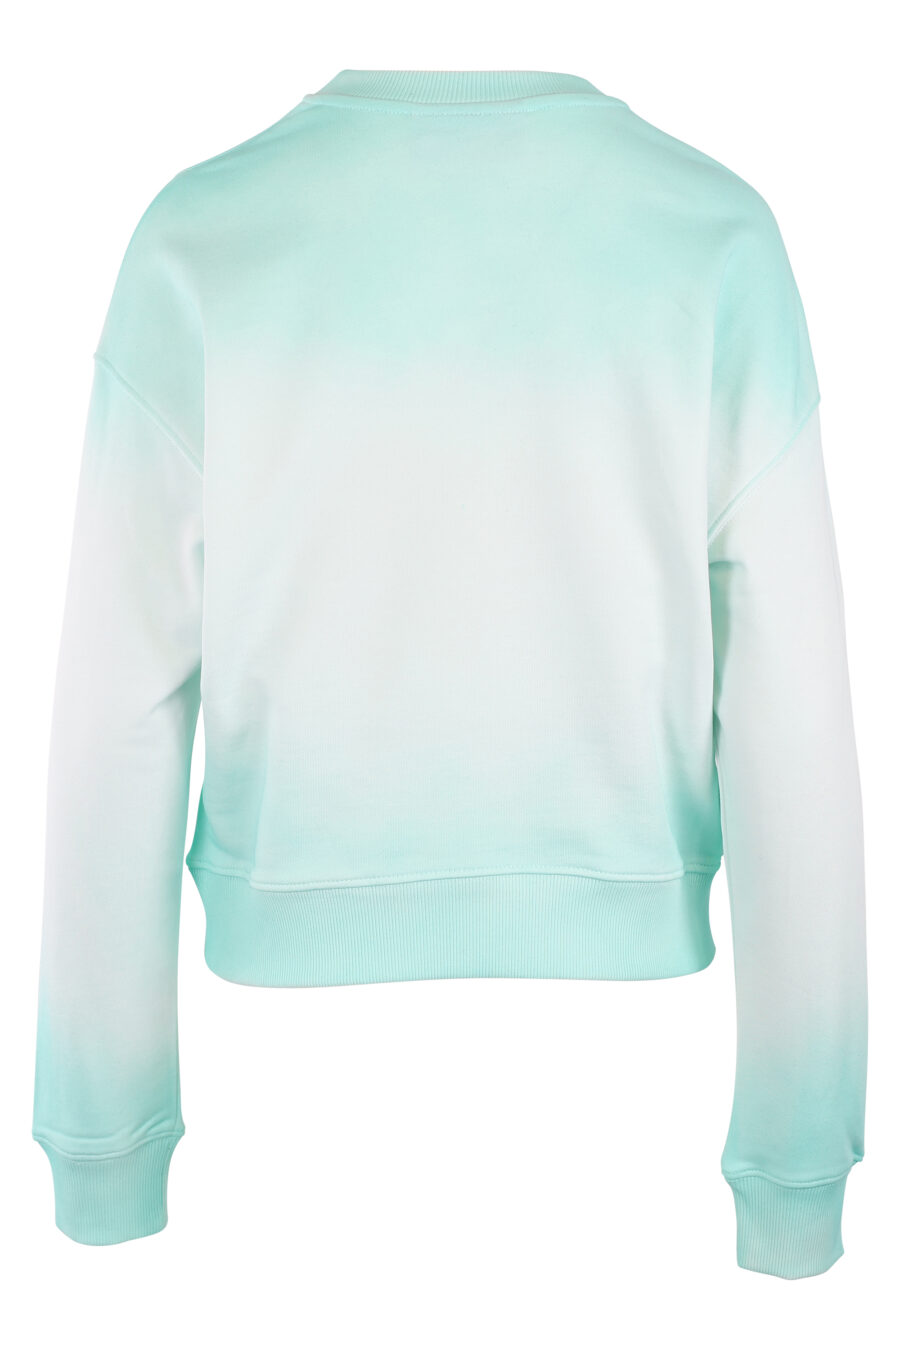 Minzgrünes Sweatshirt mit Farbverlauf und Augenlogo - IMG 6265